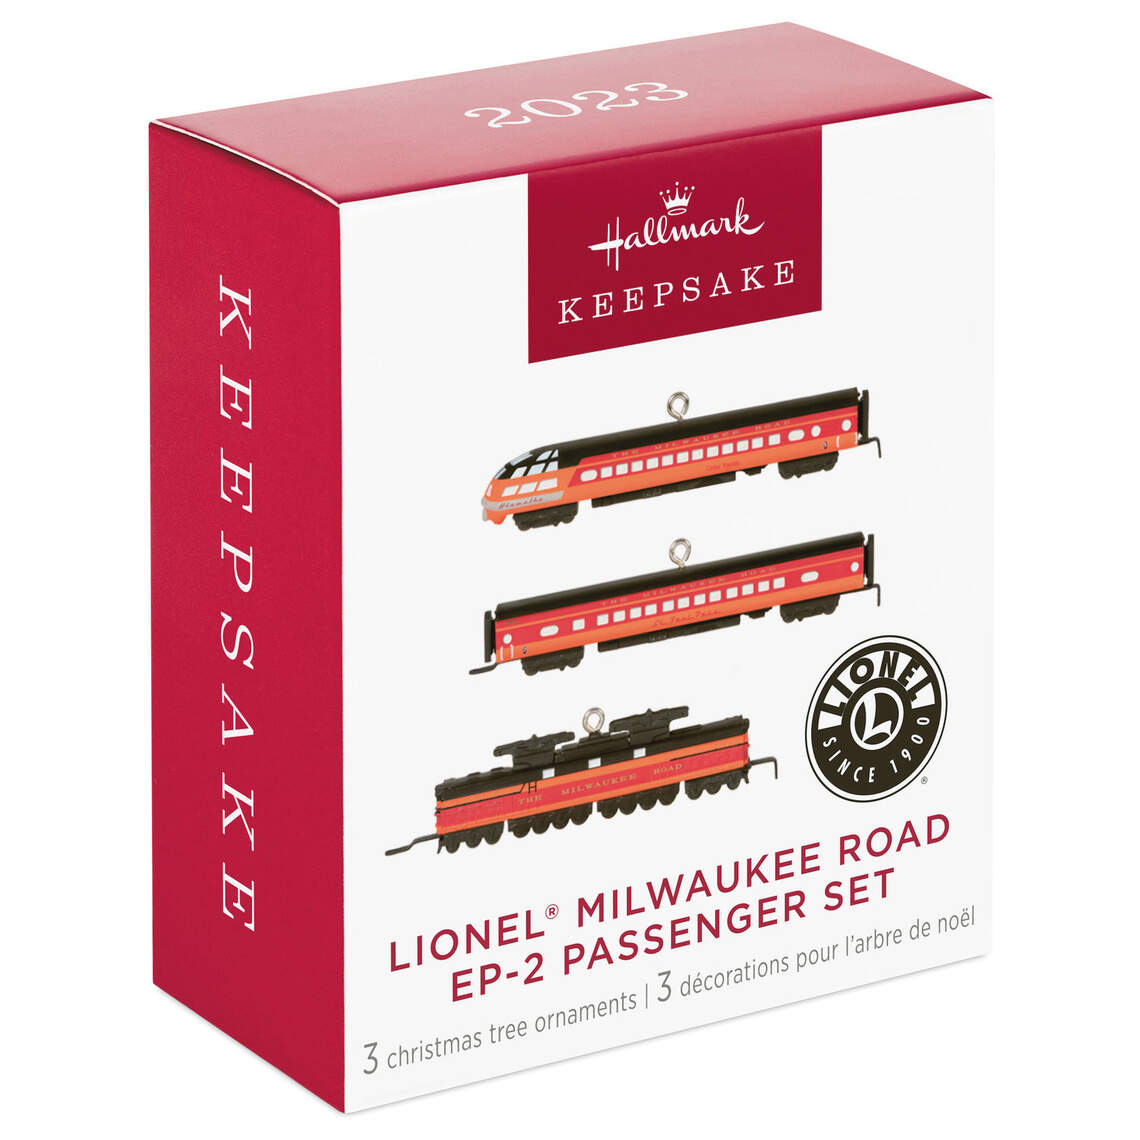 Lionel Milwaukee Road EP-2 Passenger Set - Hallmark Keepsake Ornaments